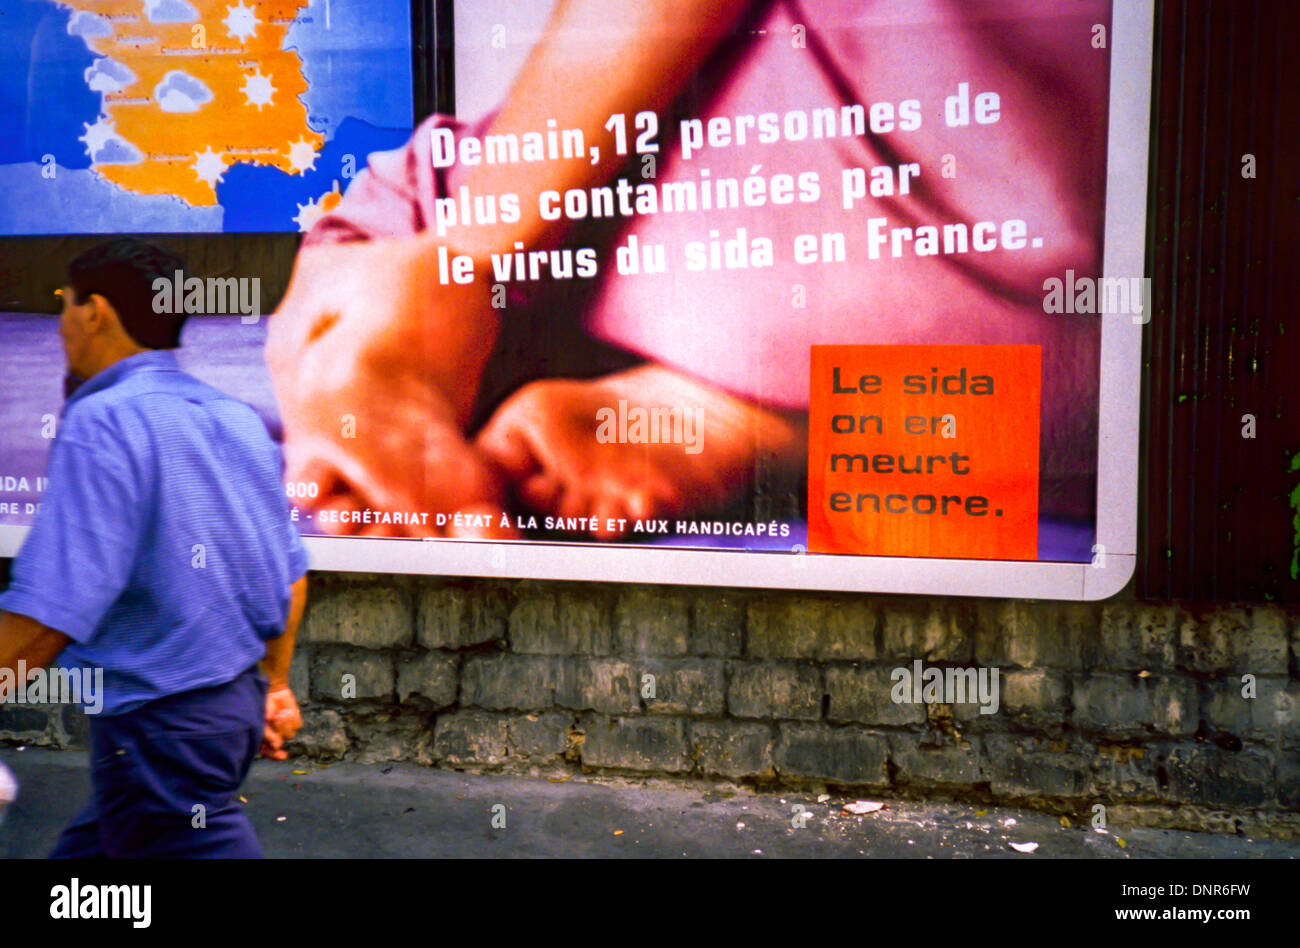 P-aris, Frankreich, Französische AIDS HIV Prävention Straßenplakate Gesundheitskrise Reklametafeln Kampagne Vintage Poster on Wall (Sida-Info-Service), Mann, der vorbei geht Stockfoto